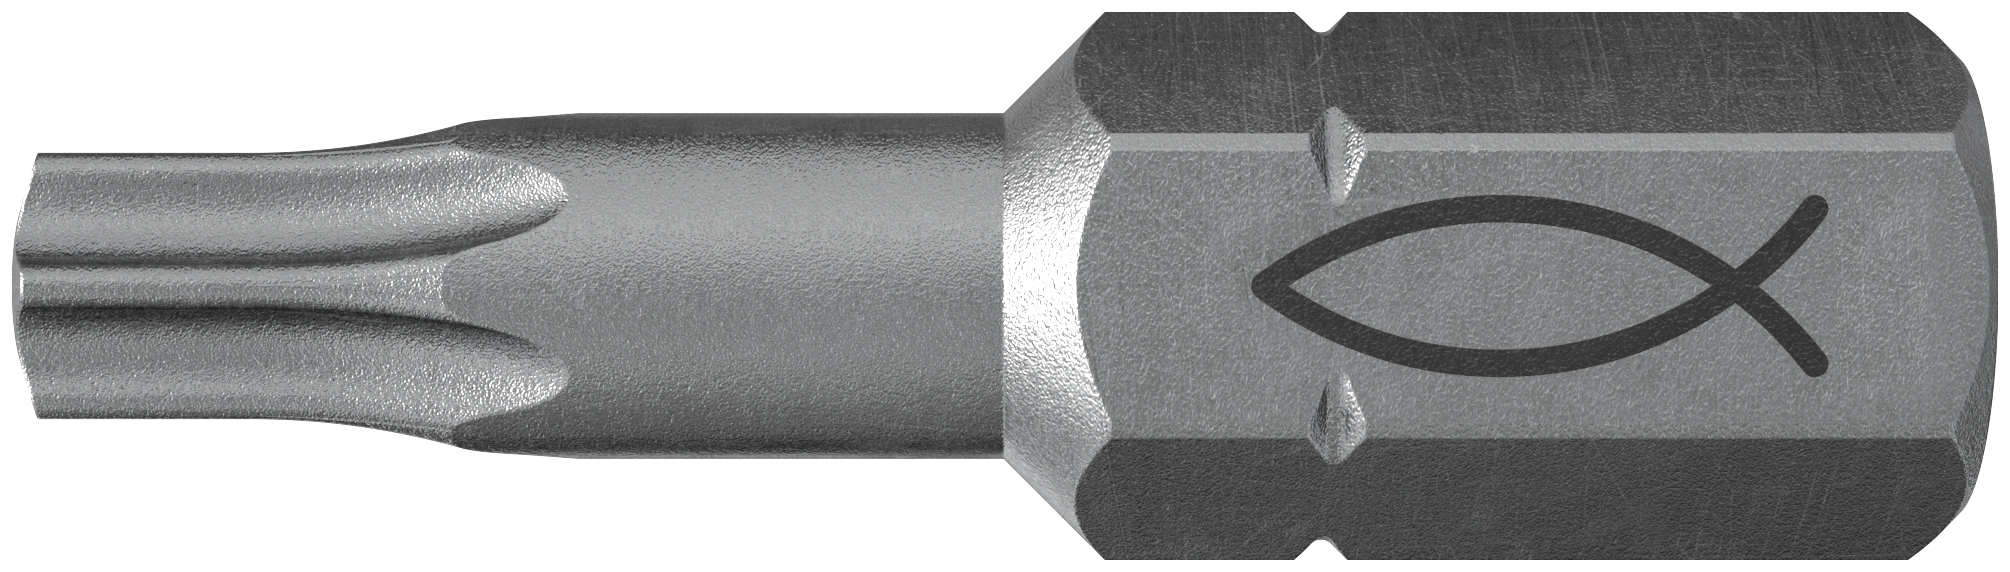 fischer Inserto per avvitatore FPB T 40 PROFI Bit W 10 (10 Pz.) L'inserto per trapano e avvitatore, in acciaio di alta qualit con elevata resistenza all?abrasione per uso professionale.